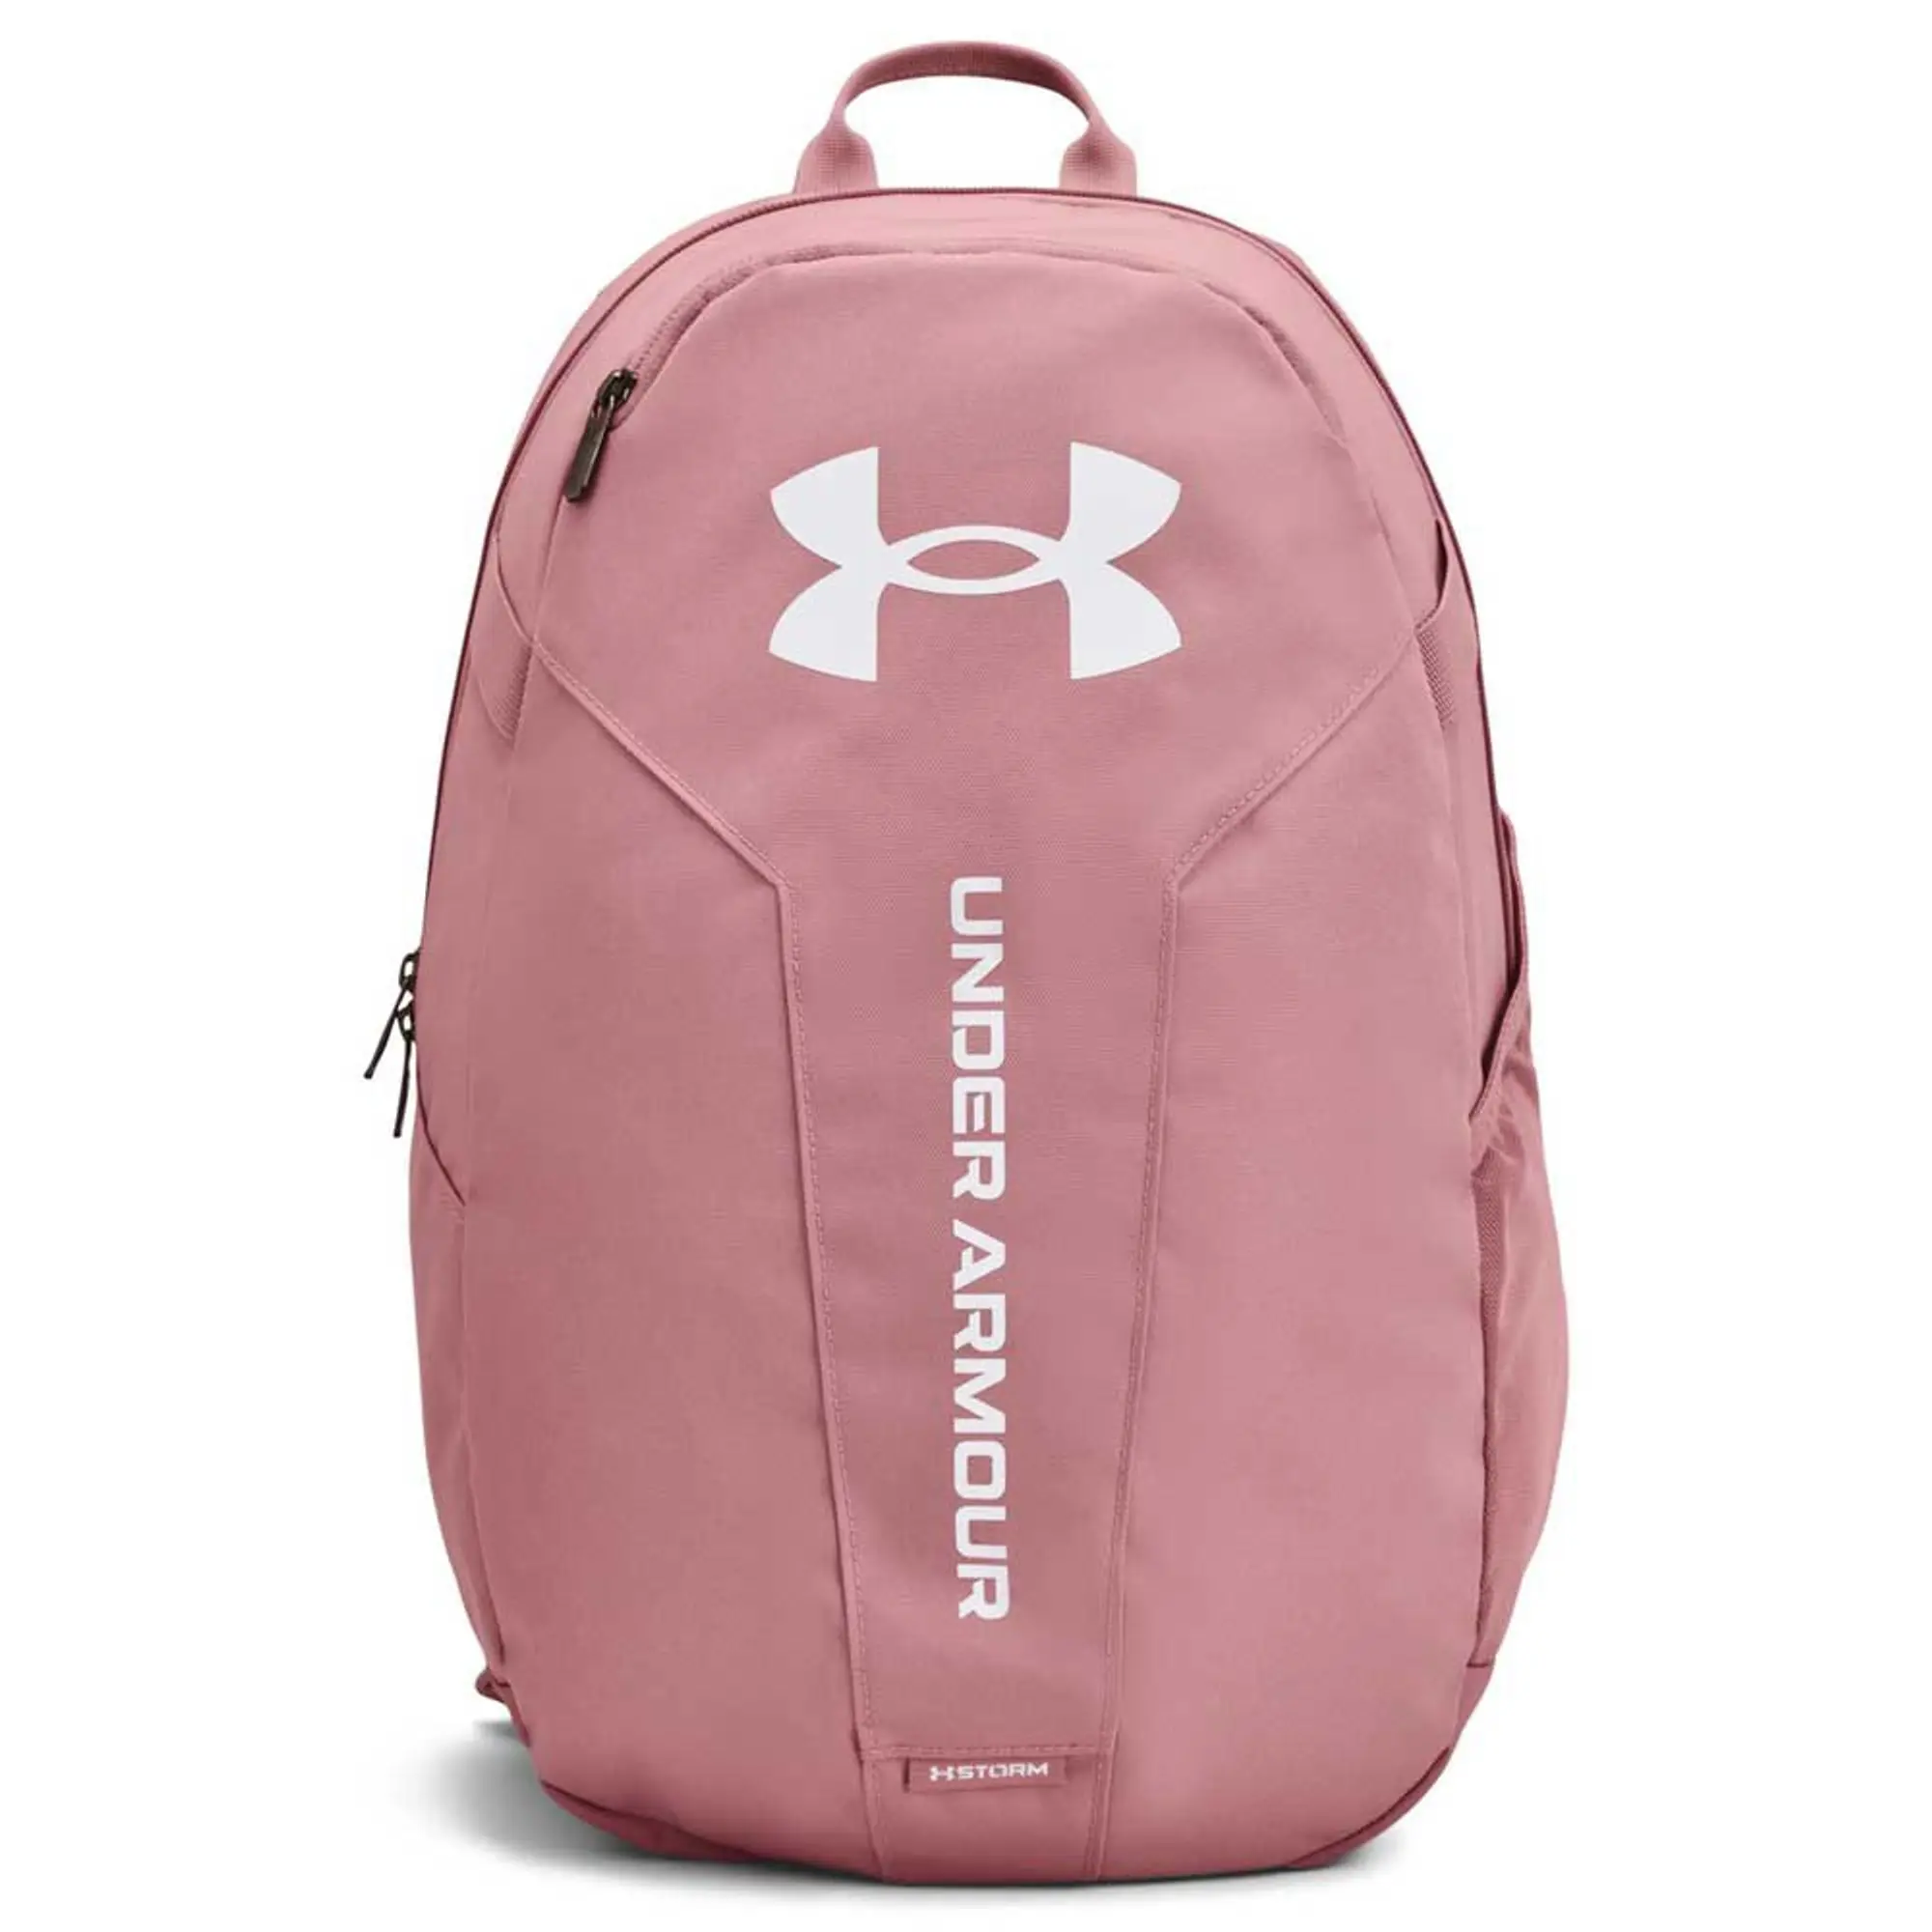 Under Armour Hustle Light Backpack - Pink